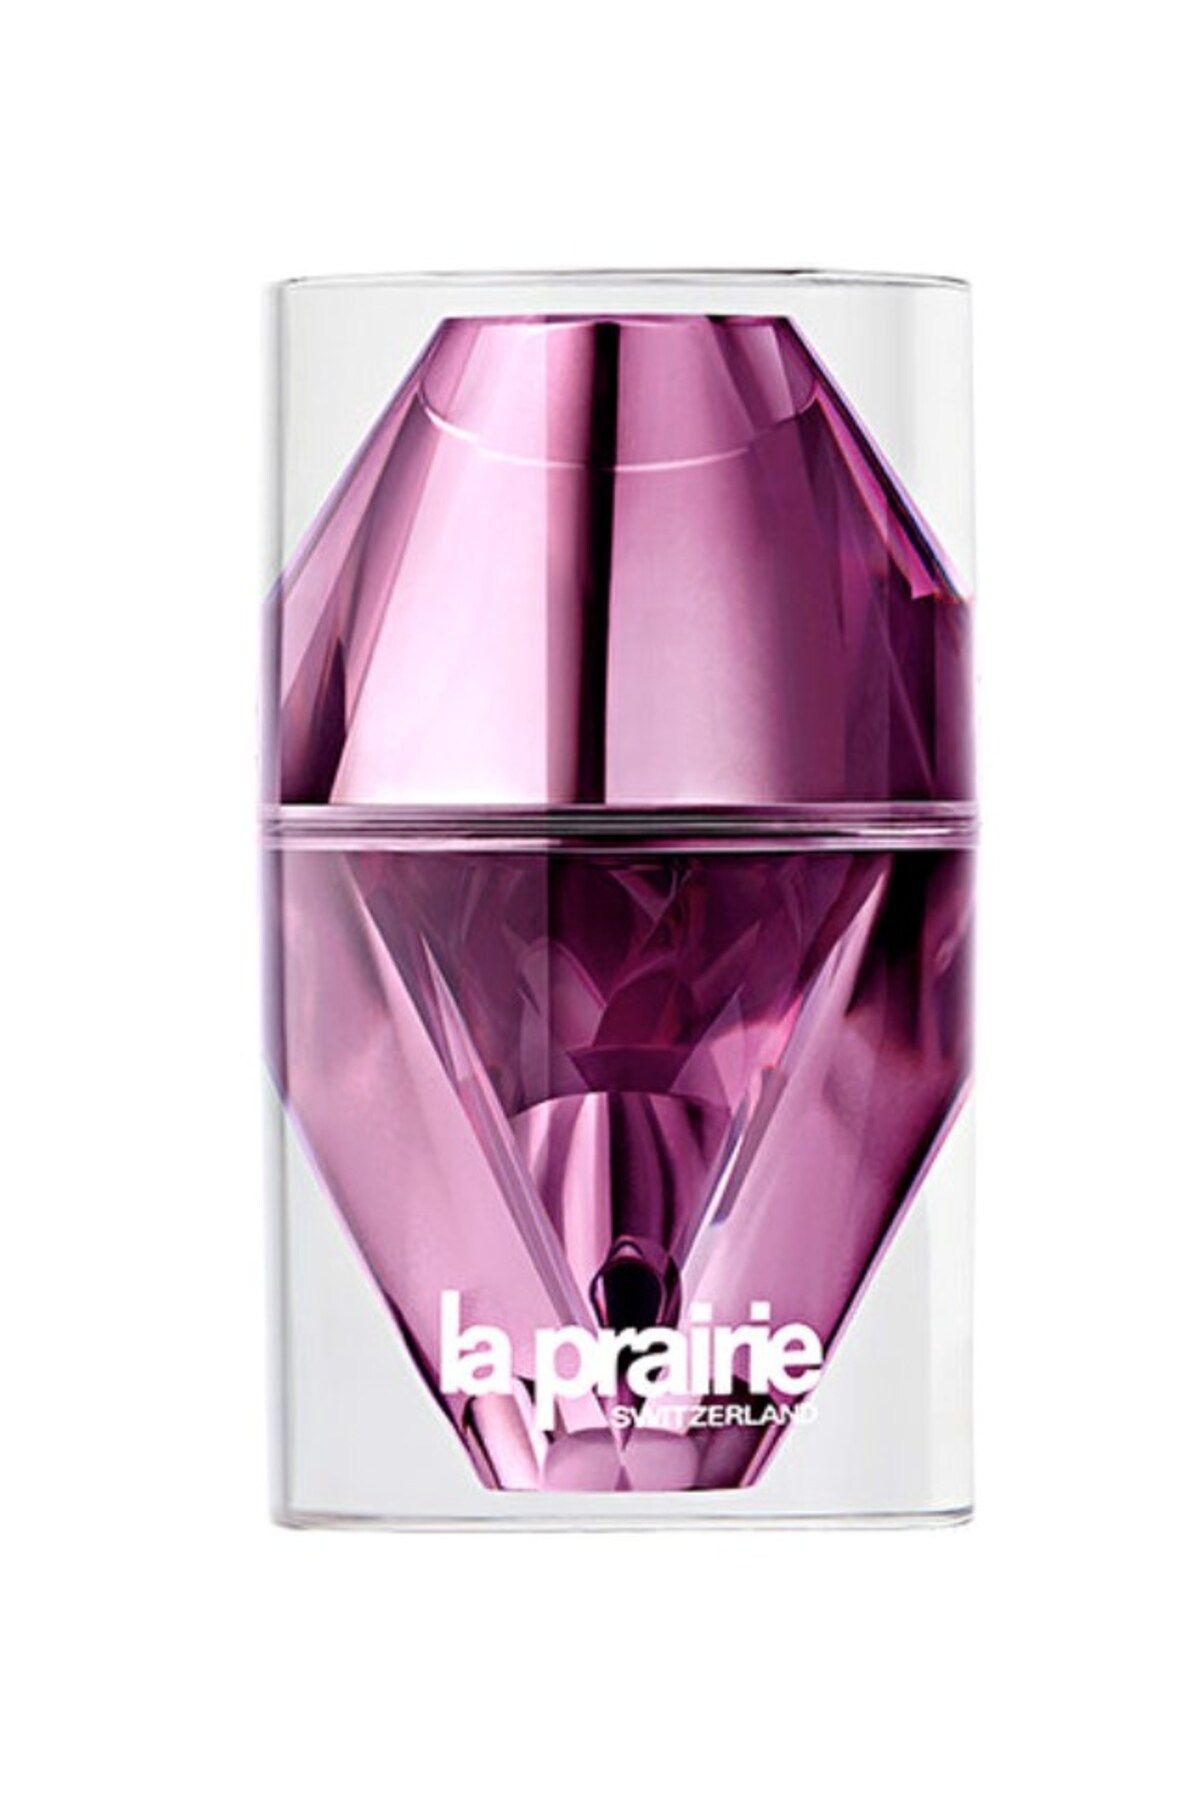 La Prairie Platinum Rare Cellular Night Elixir 20 ML